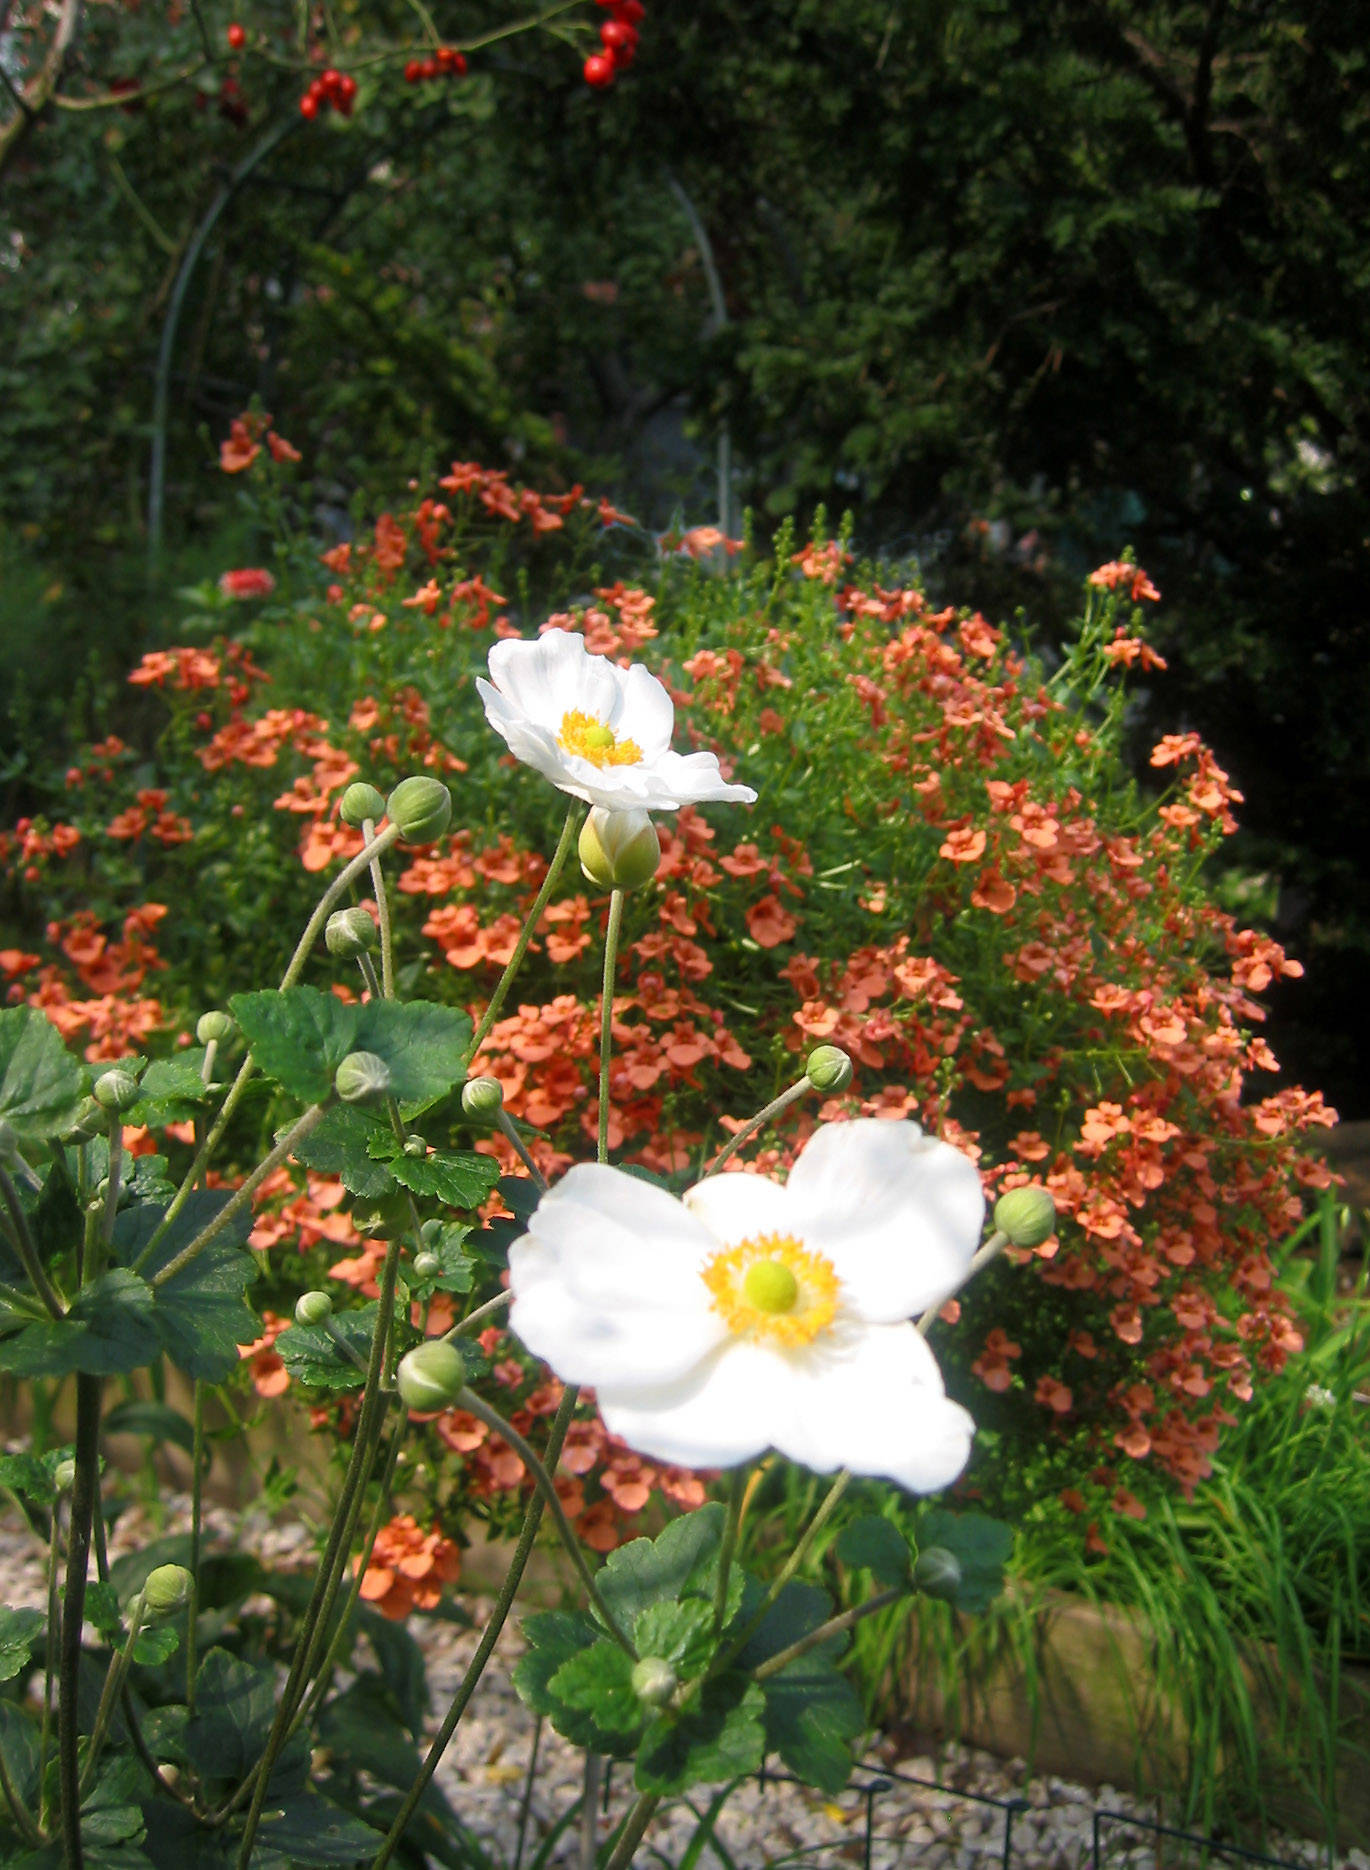 On a Garden Path - Anemone, Diascia & Rose Hips